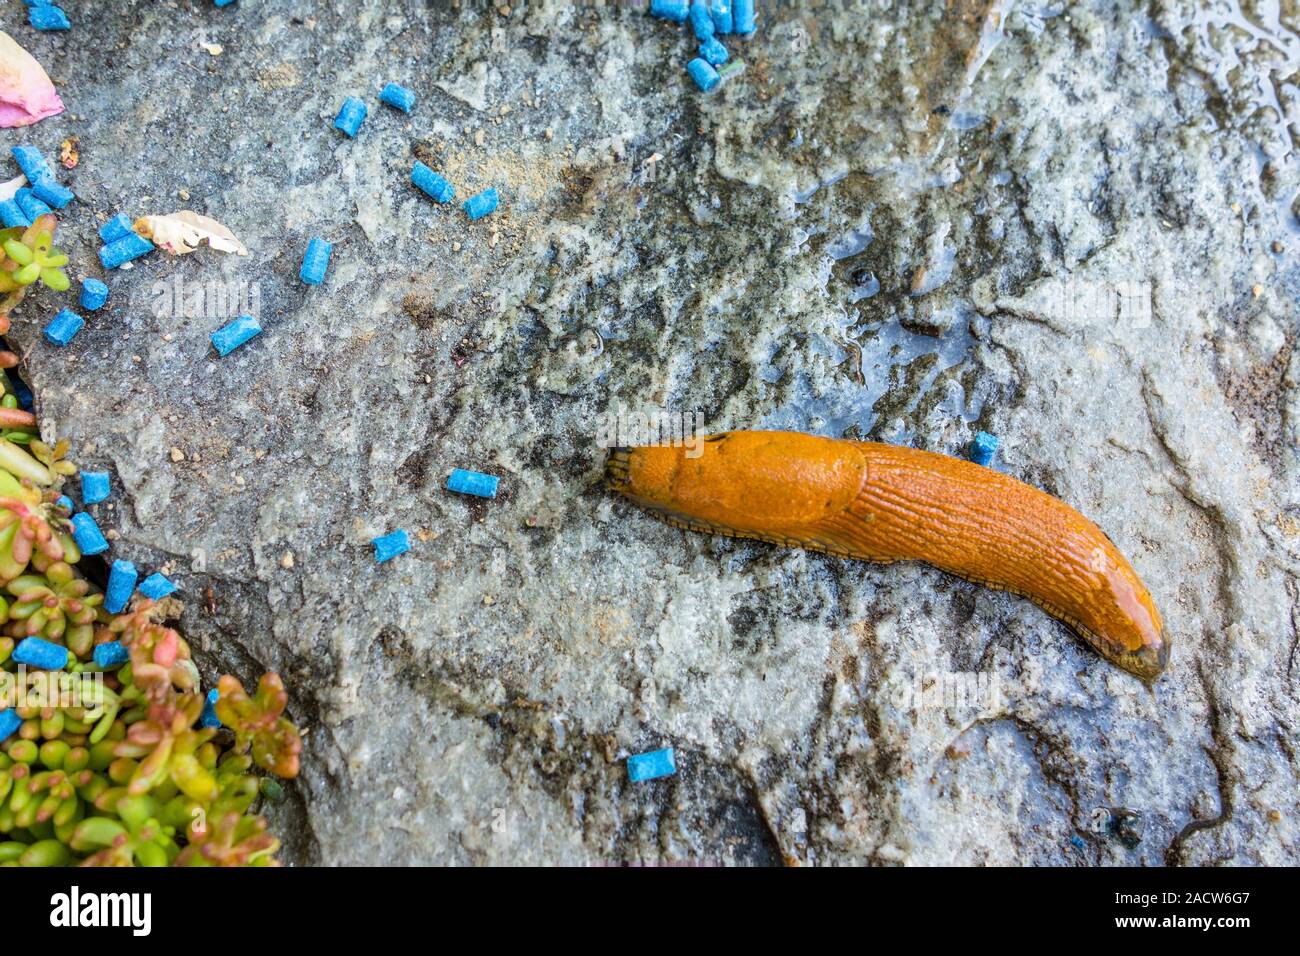 Slug with slug pellets Stock Photo